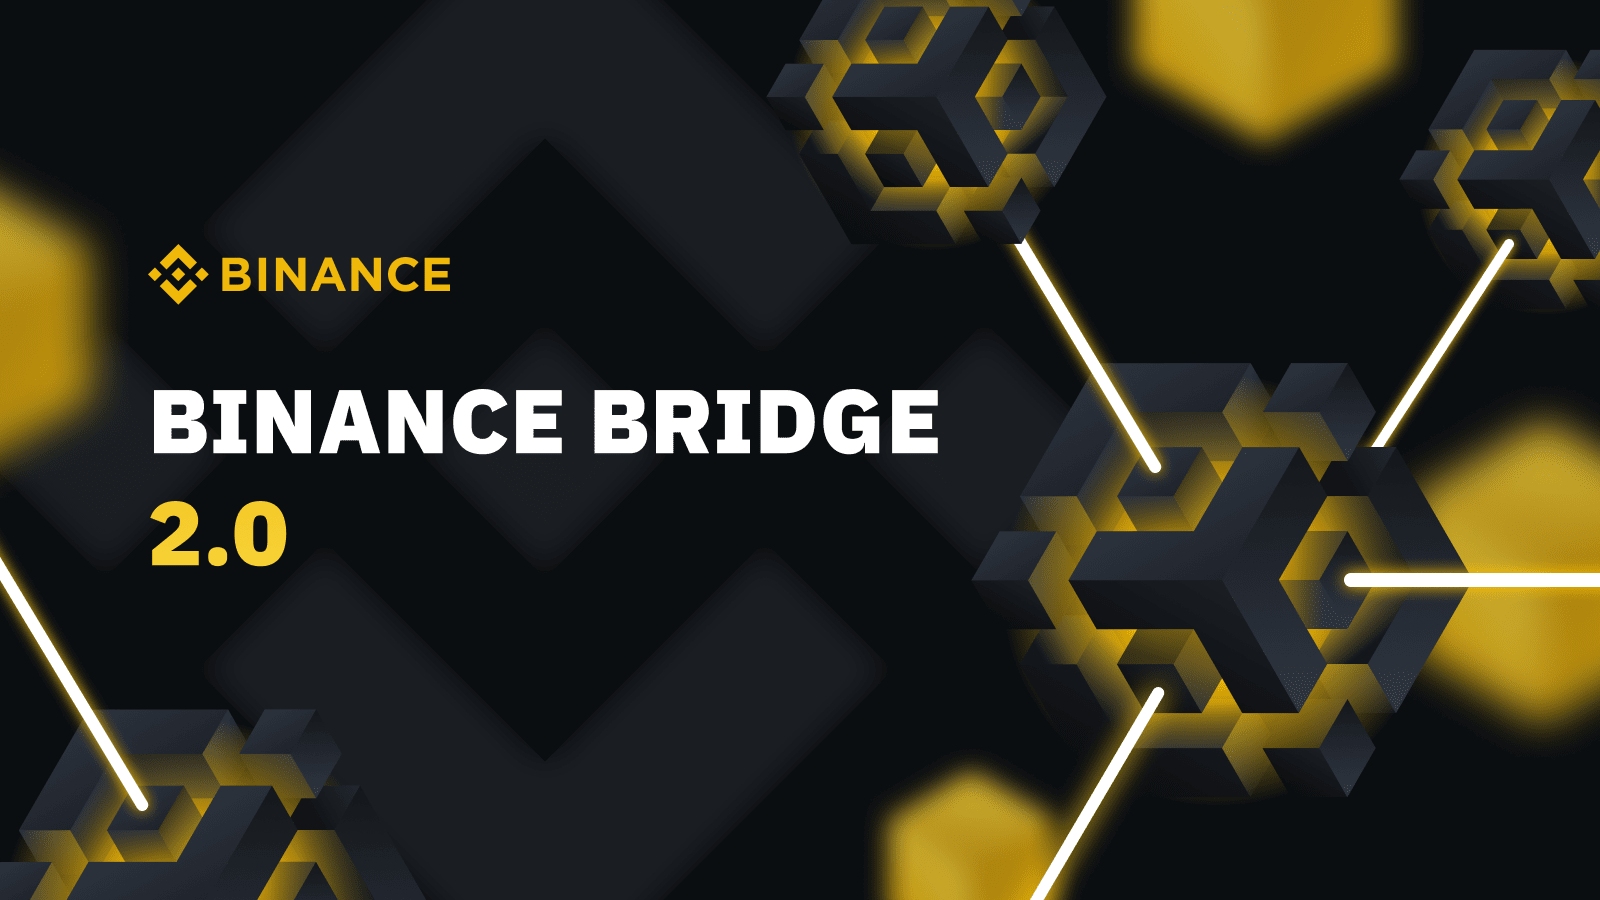 Image d'annonce du Binance Bridge 2.0.